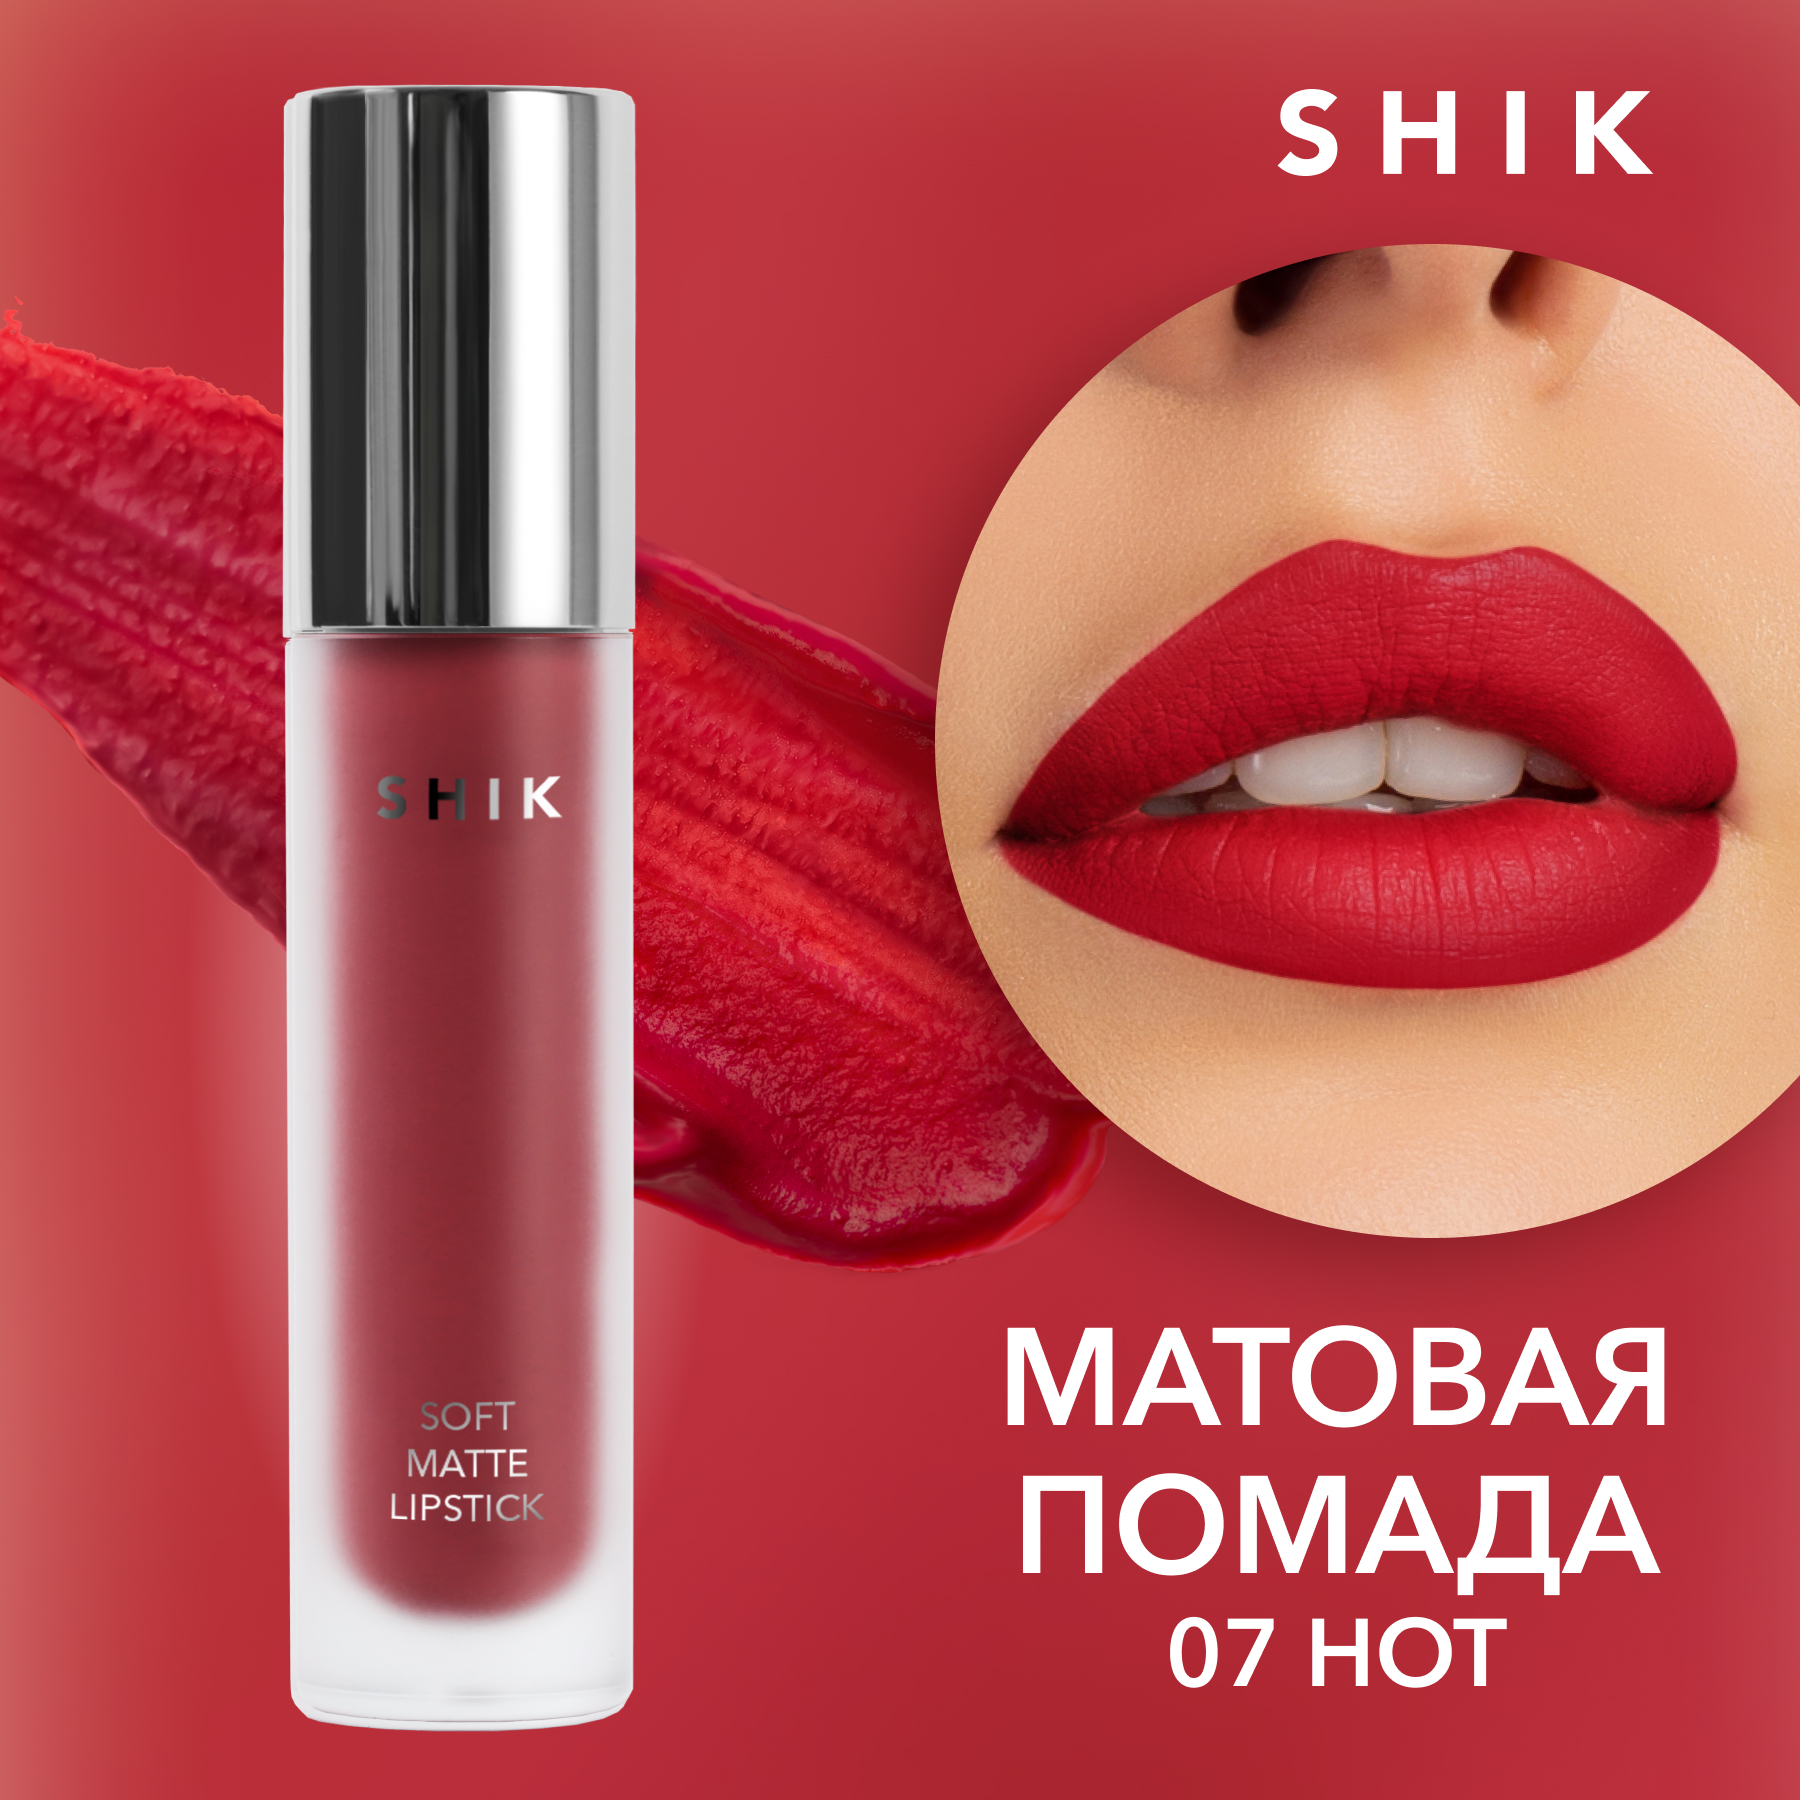 фото Жидкая матовая помада shik soft matte lipstick т.07 hot 5 г